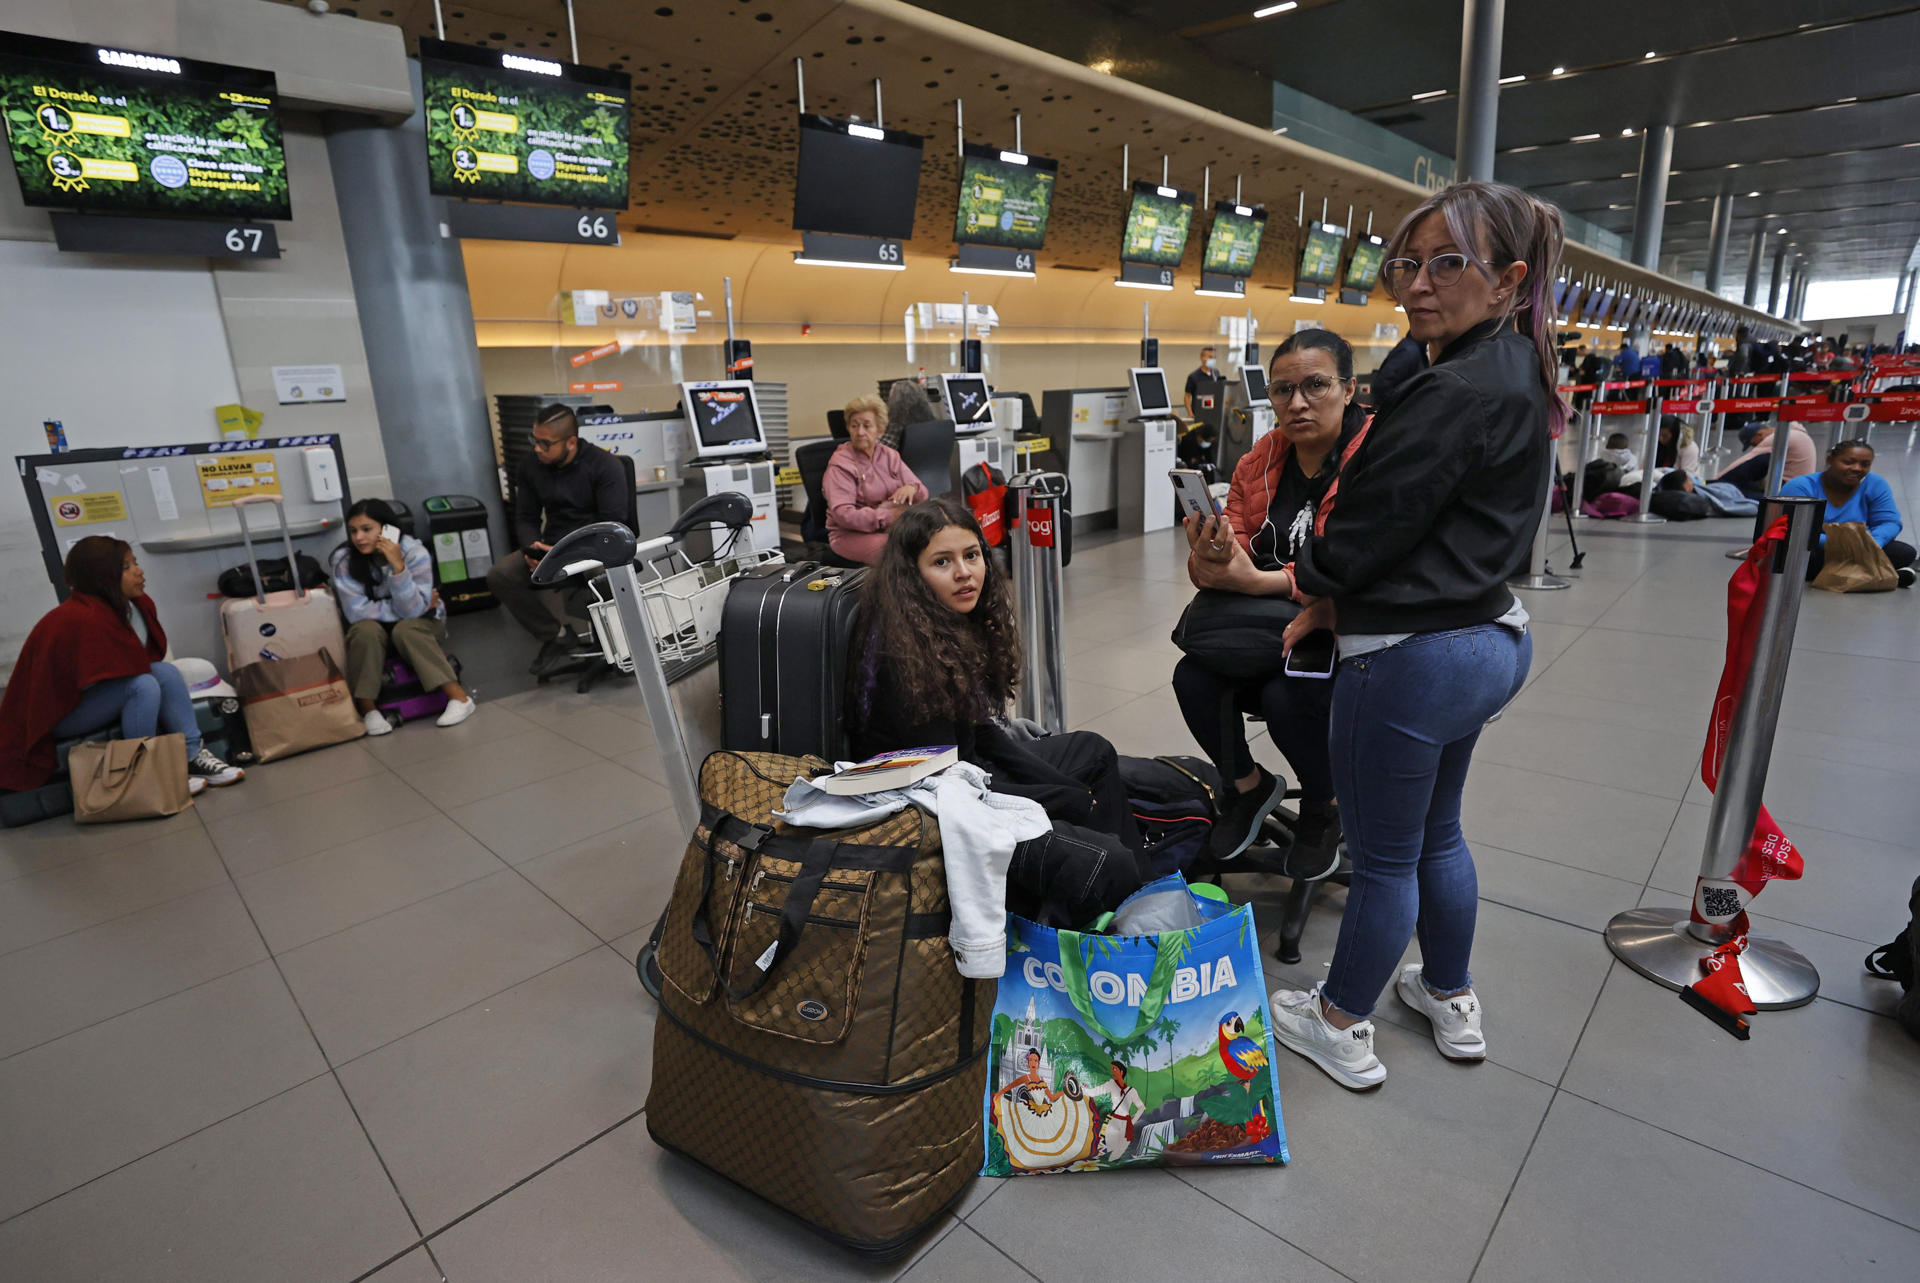 La colombiana Viva Air, con vuelos a Punta Cana, anuncia cese de operaciones